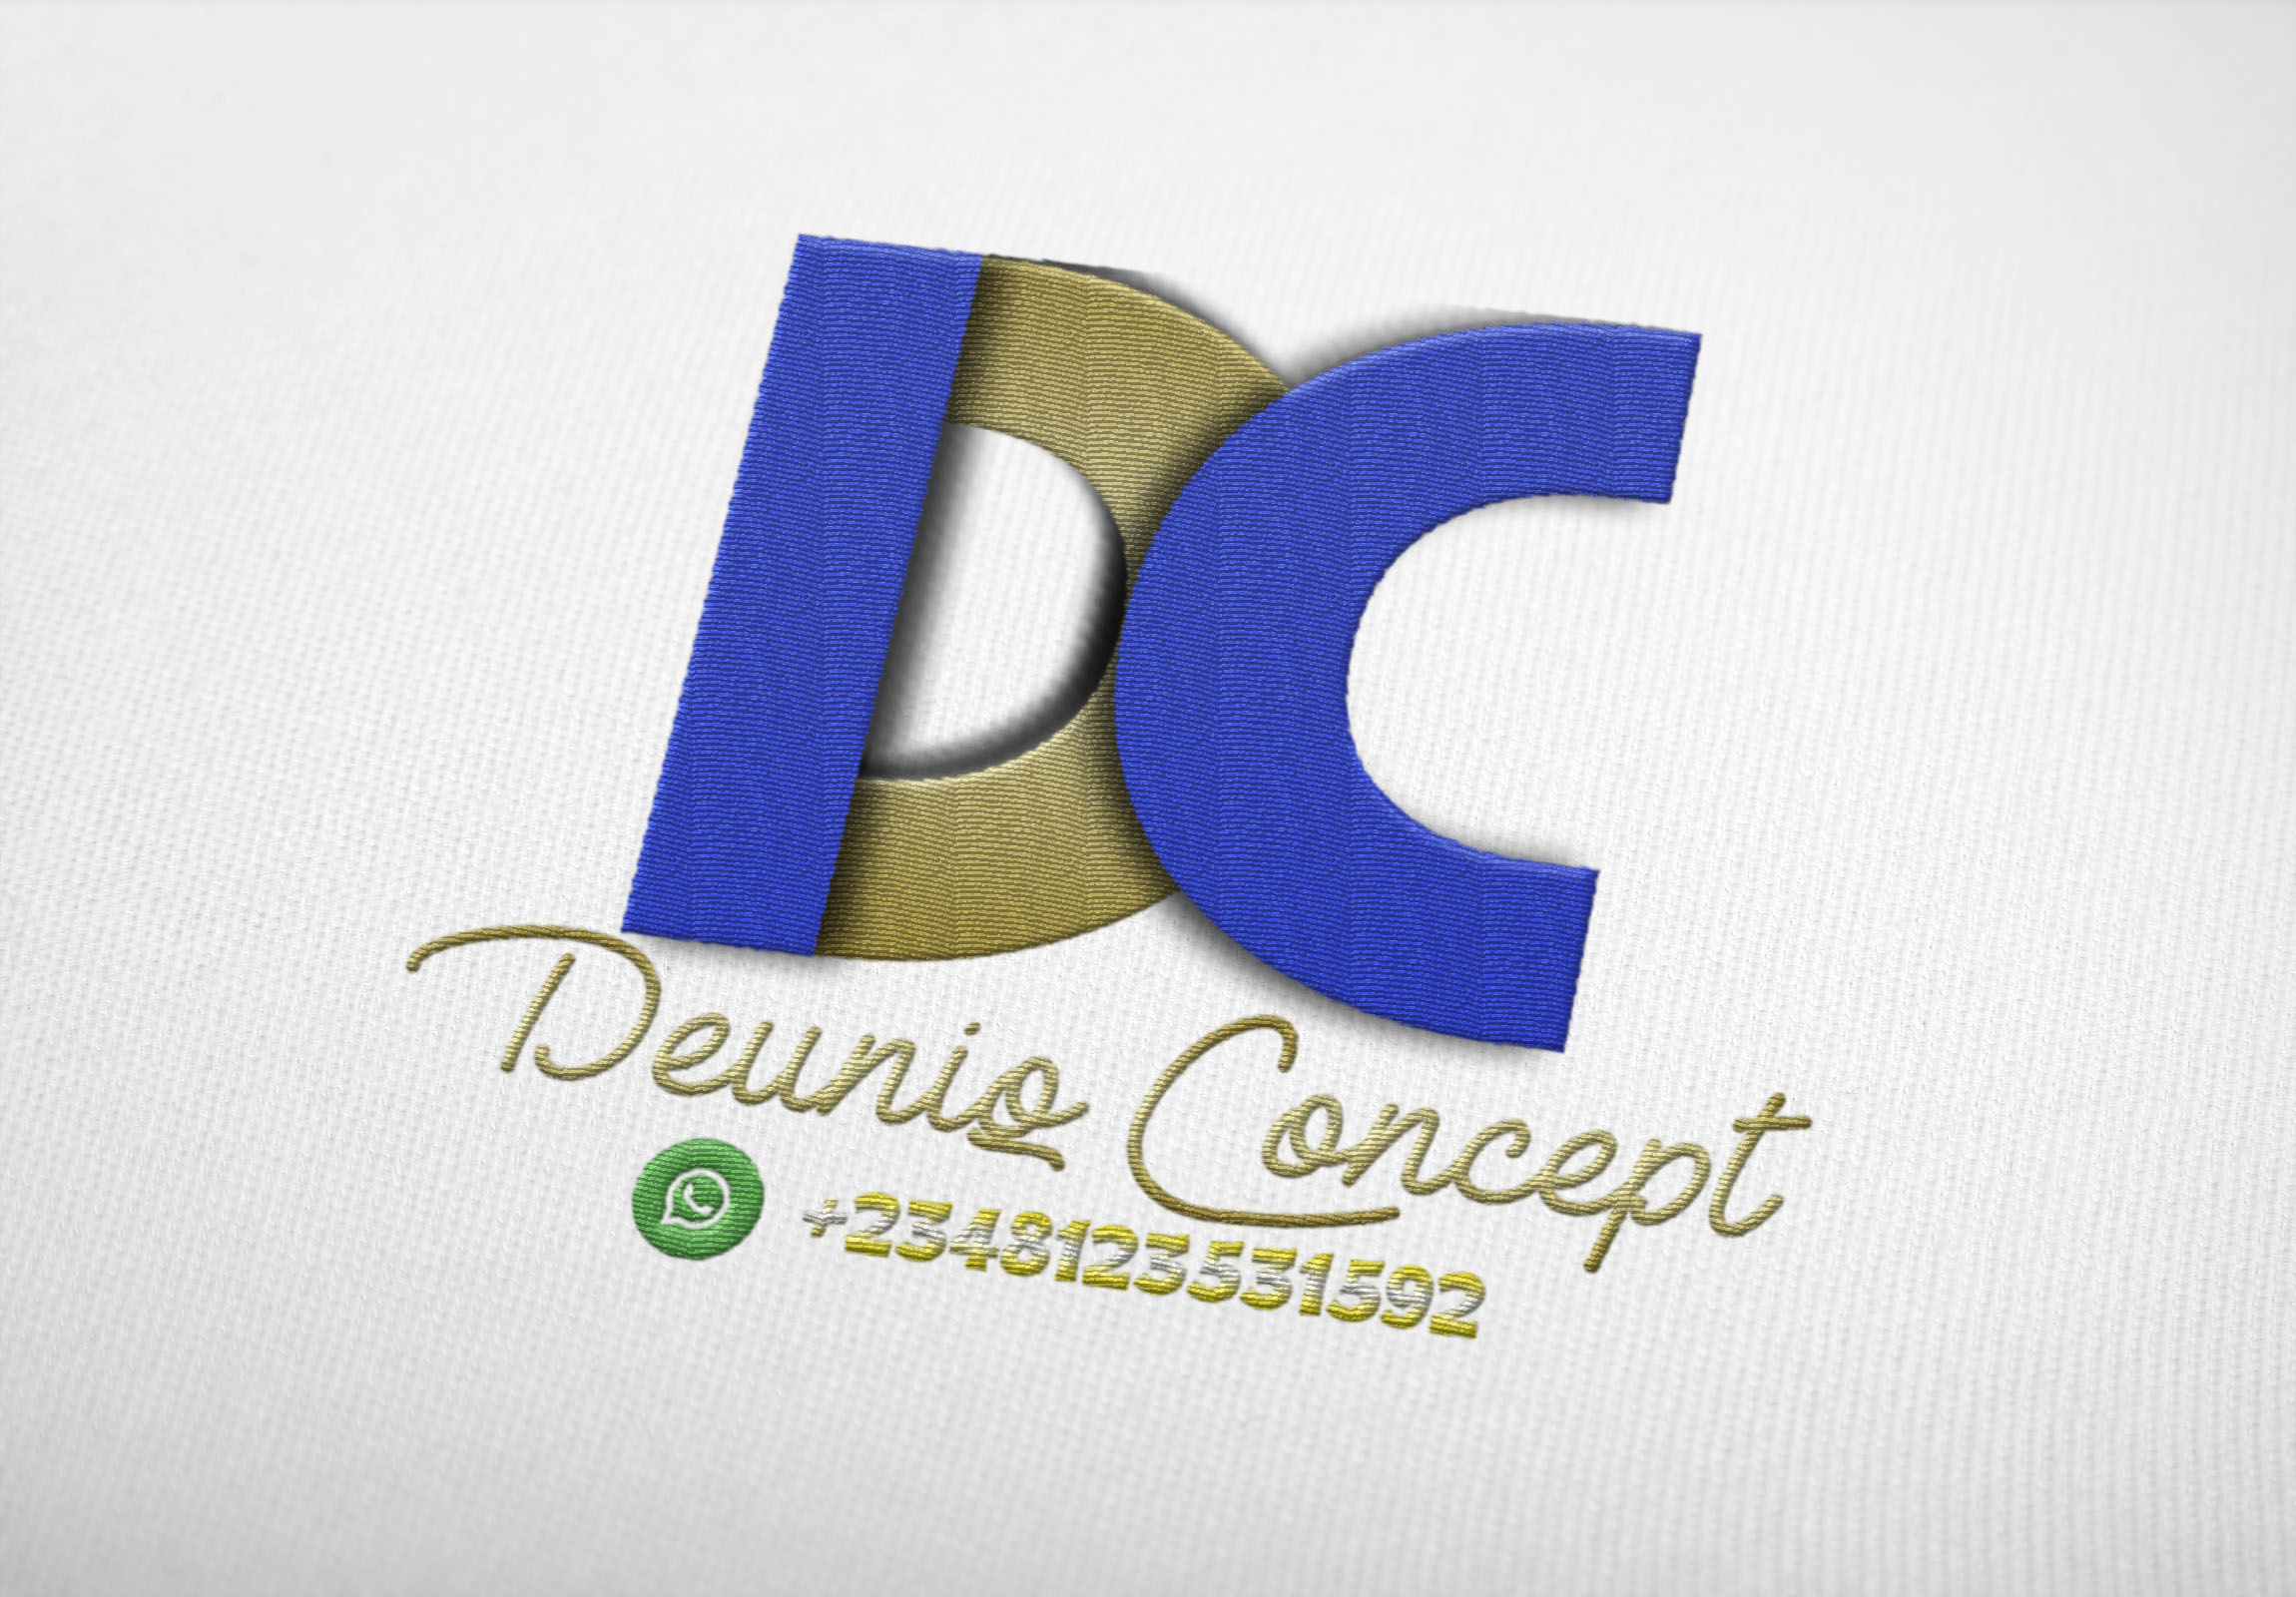 Deuniq Concept provider